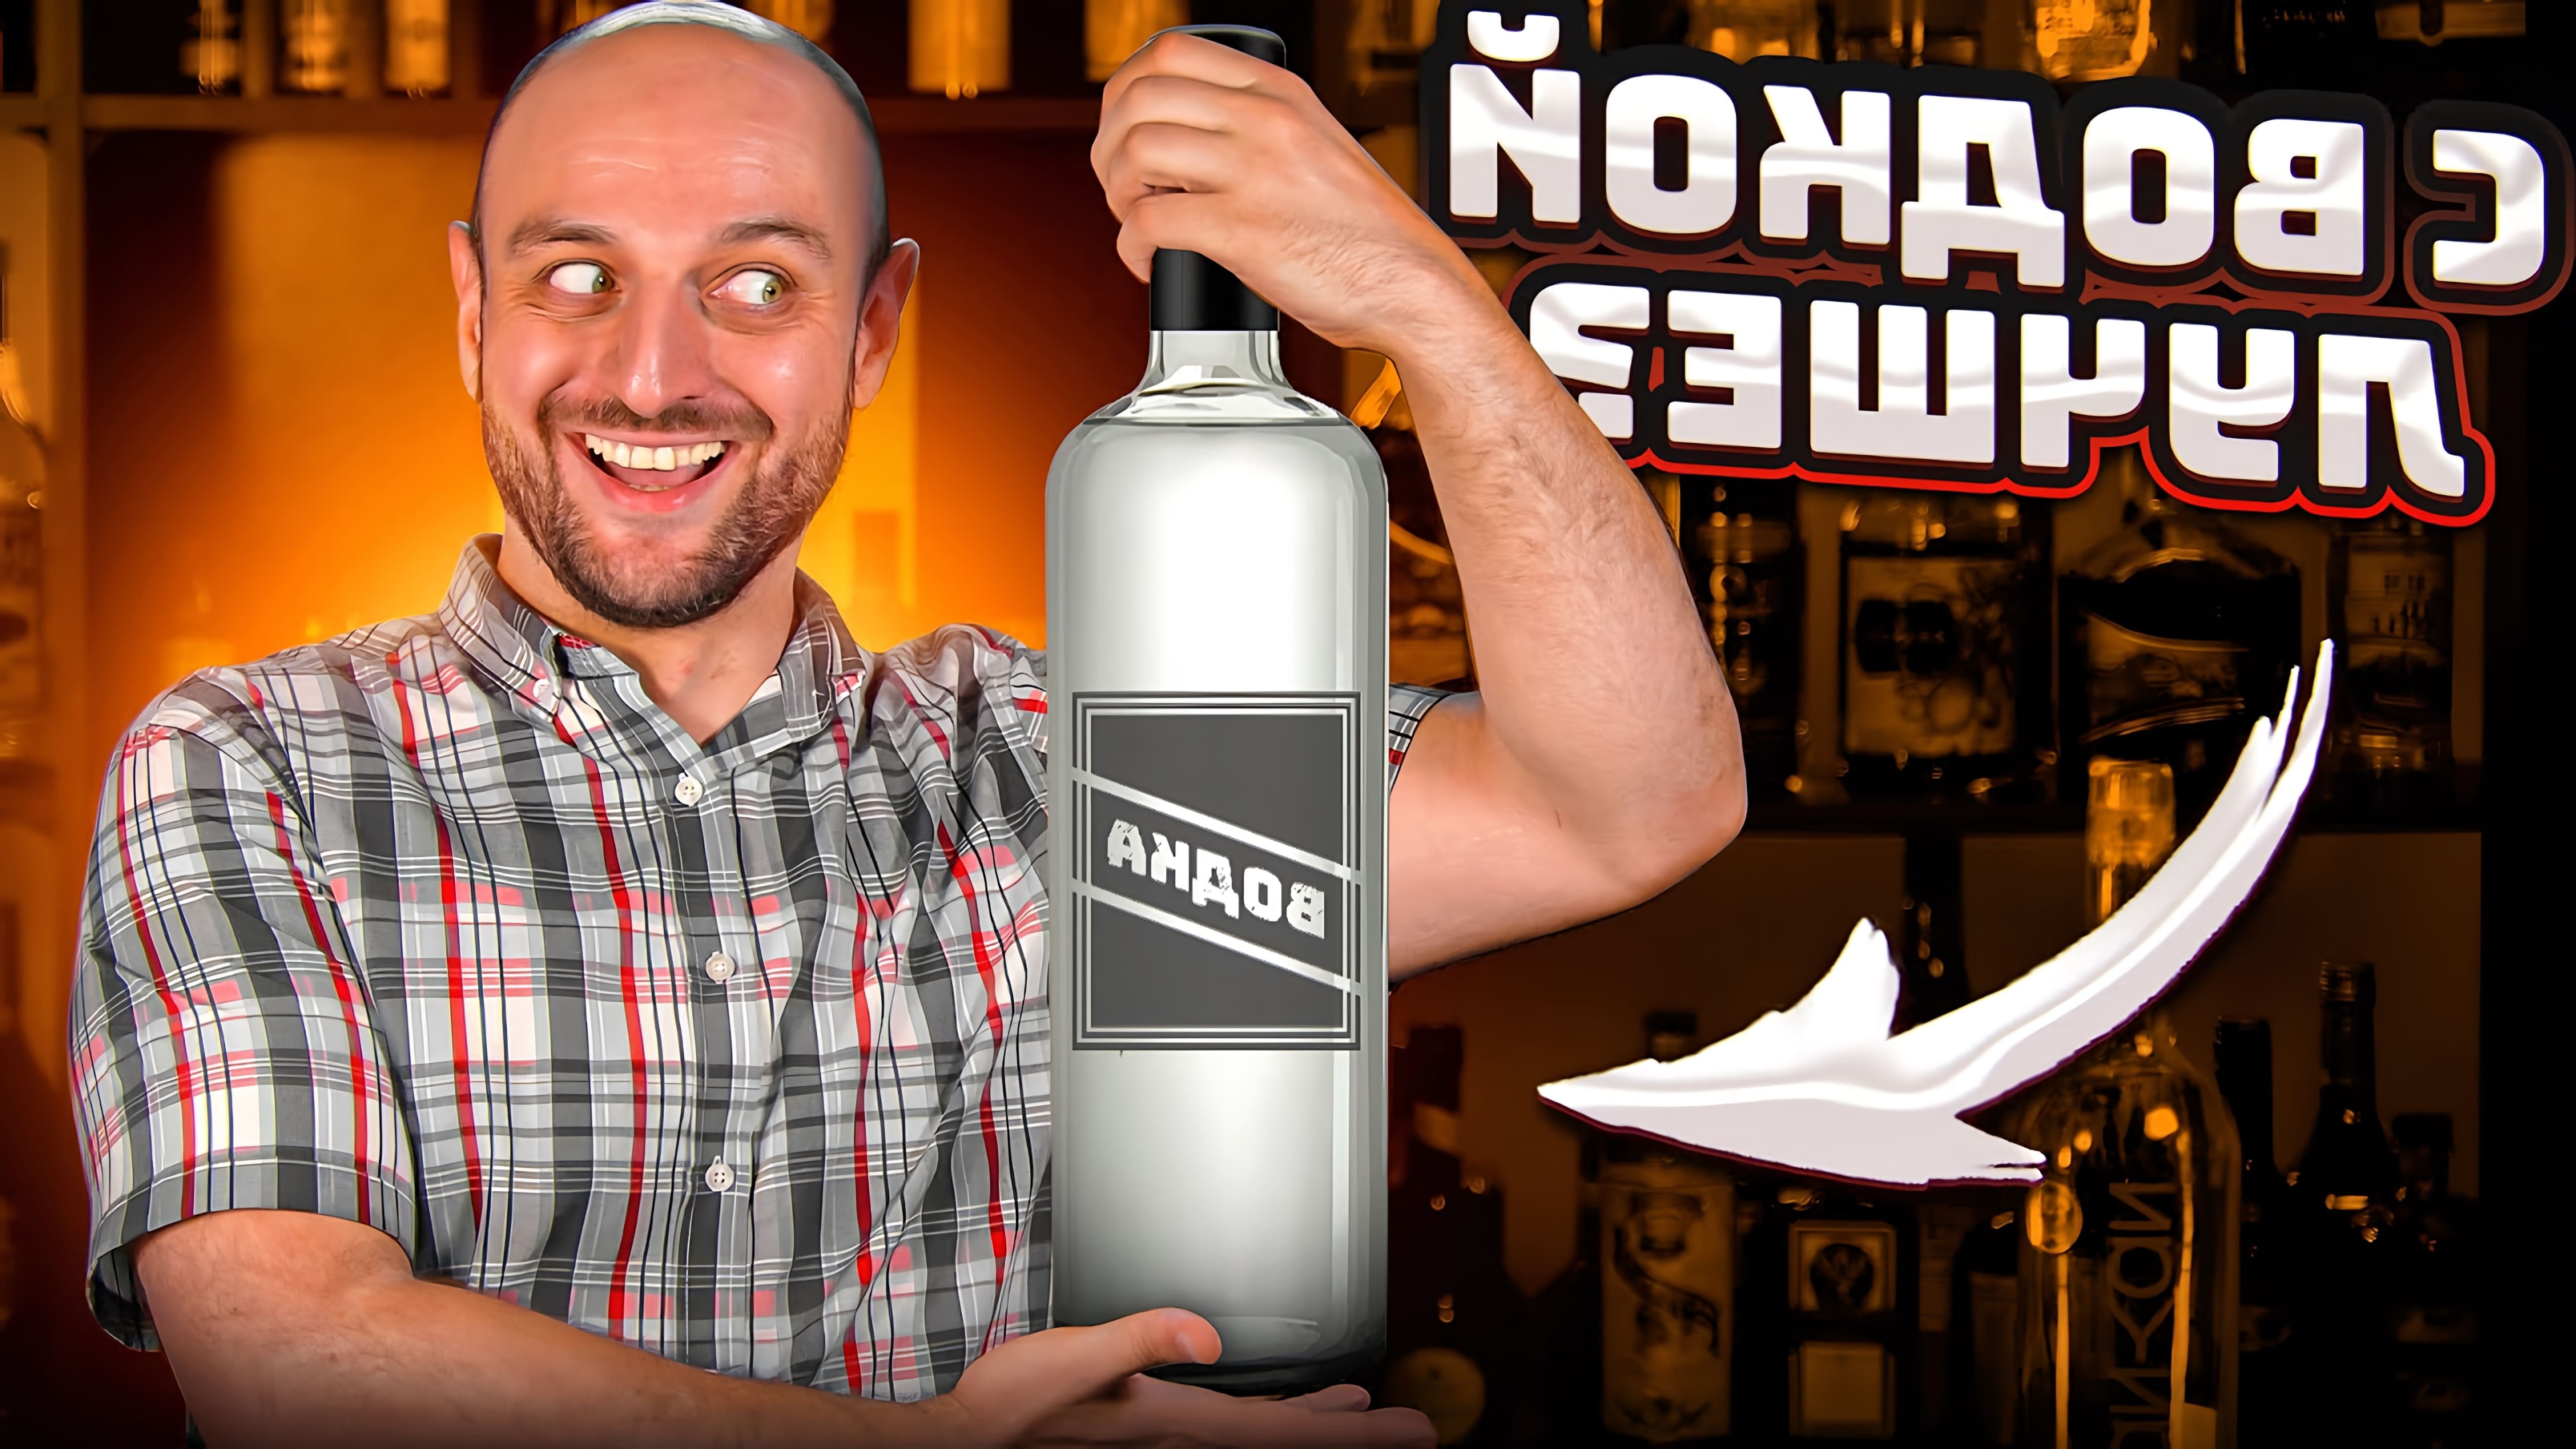 В данном видео автор проводит эксперимент, заменяя основной алкоголь в популярных коктейлях на водку